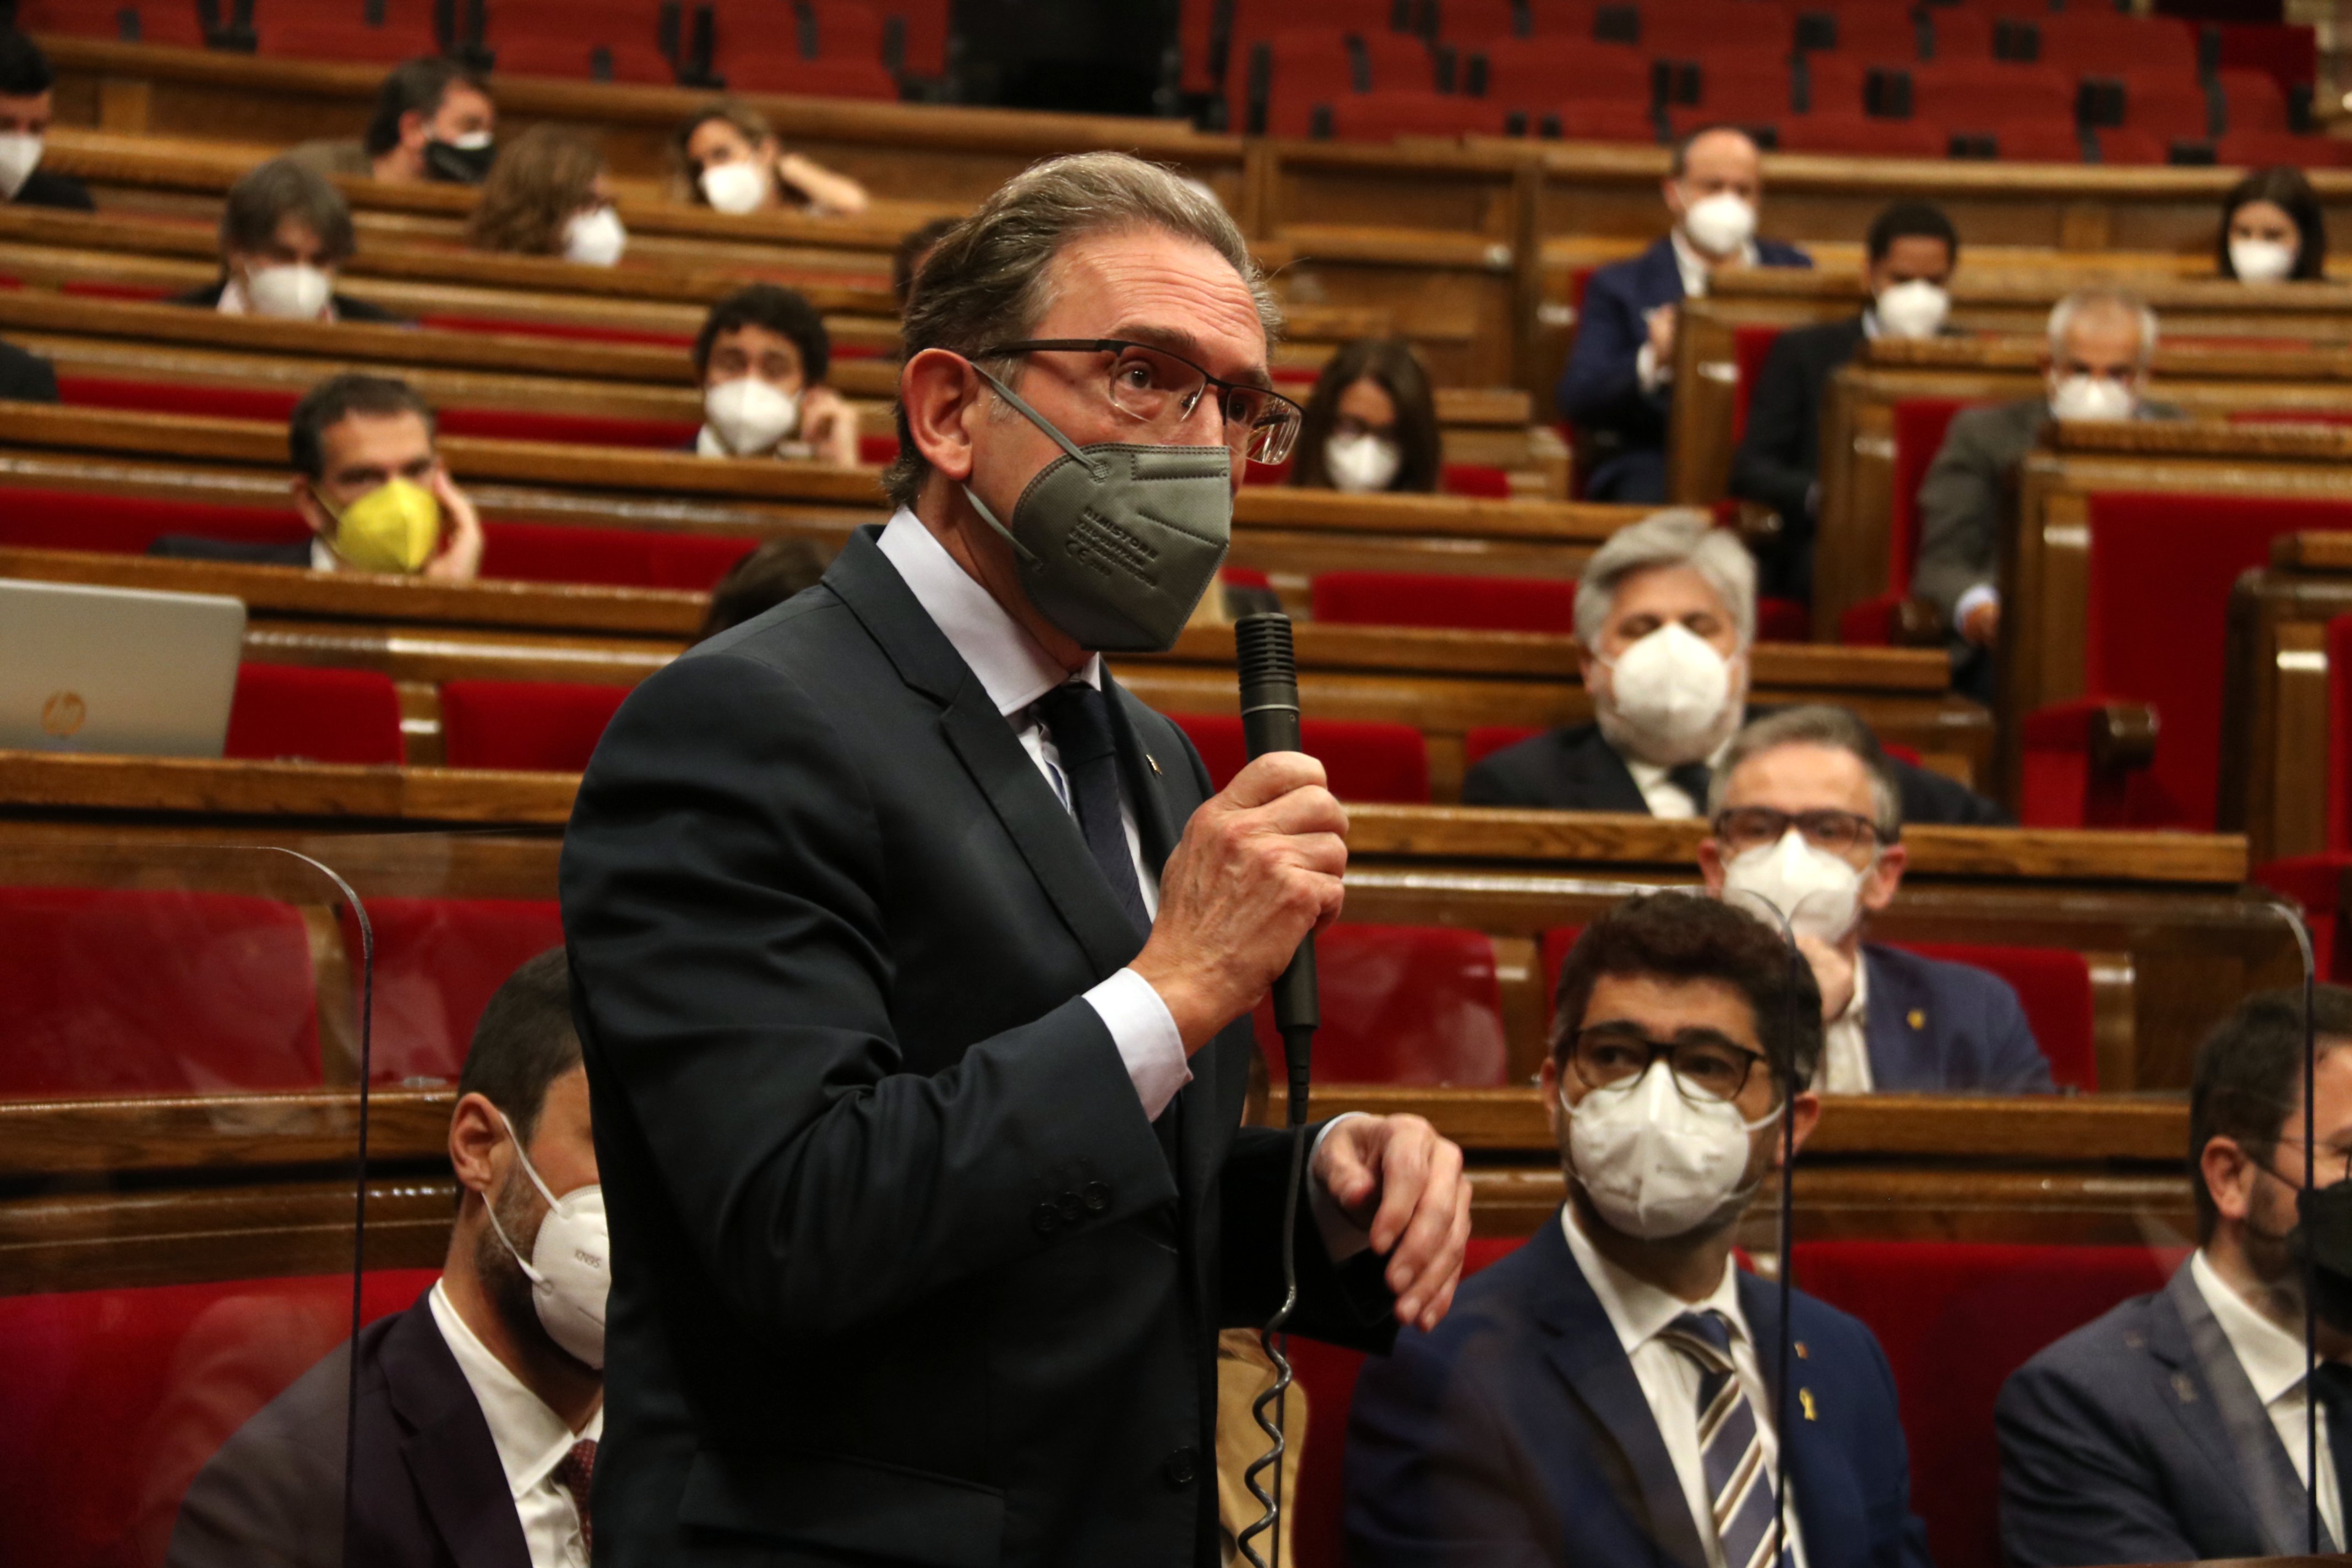 Giró s'estrena al Parlament amb un tens cara a cara amb Gallego